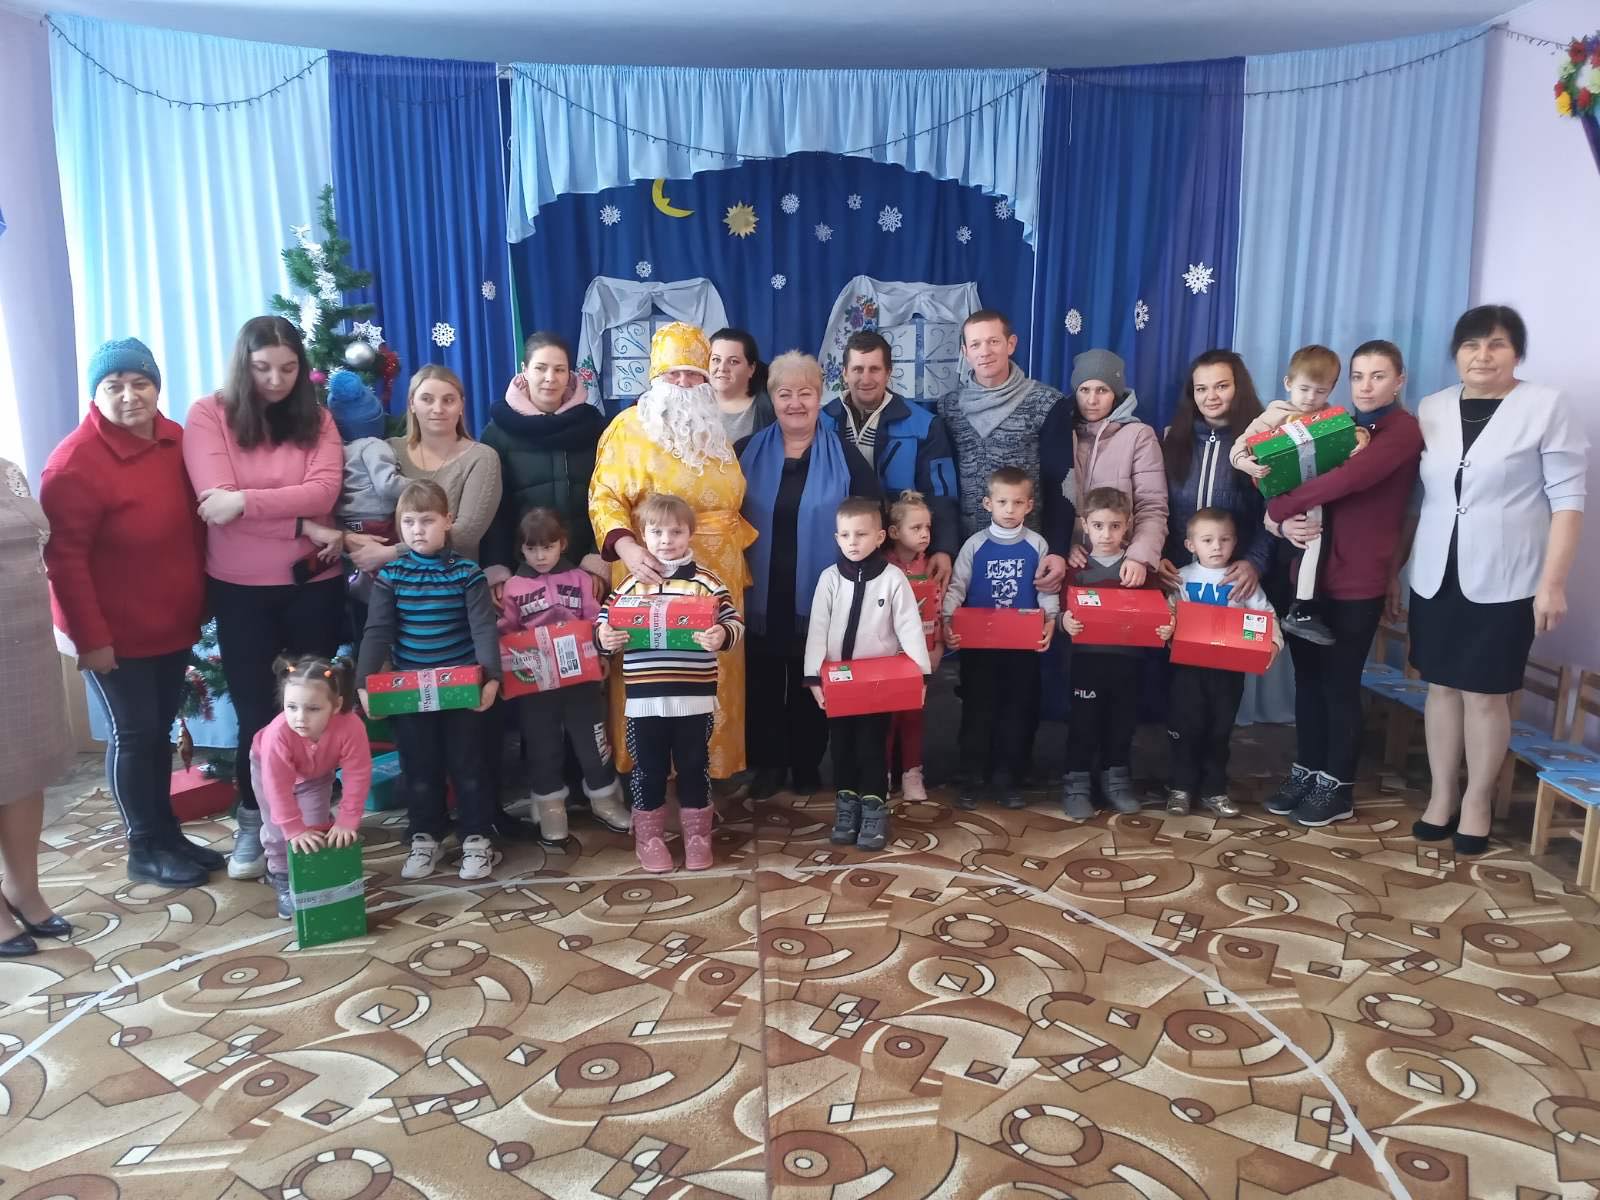 "Фонд Добра и Любви" Александра Дубового порадовал подарками-сюрпризами к праздникам около четырех тысяч детей Бессарабии